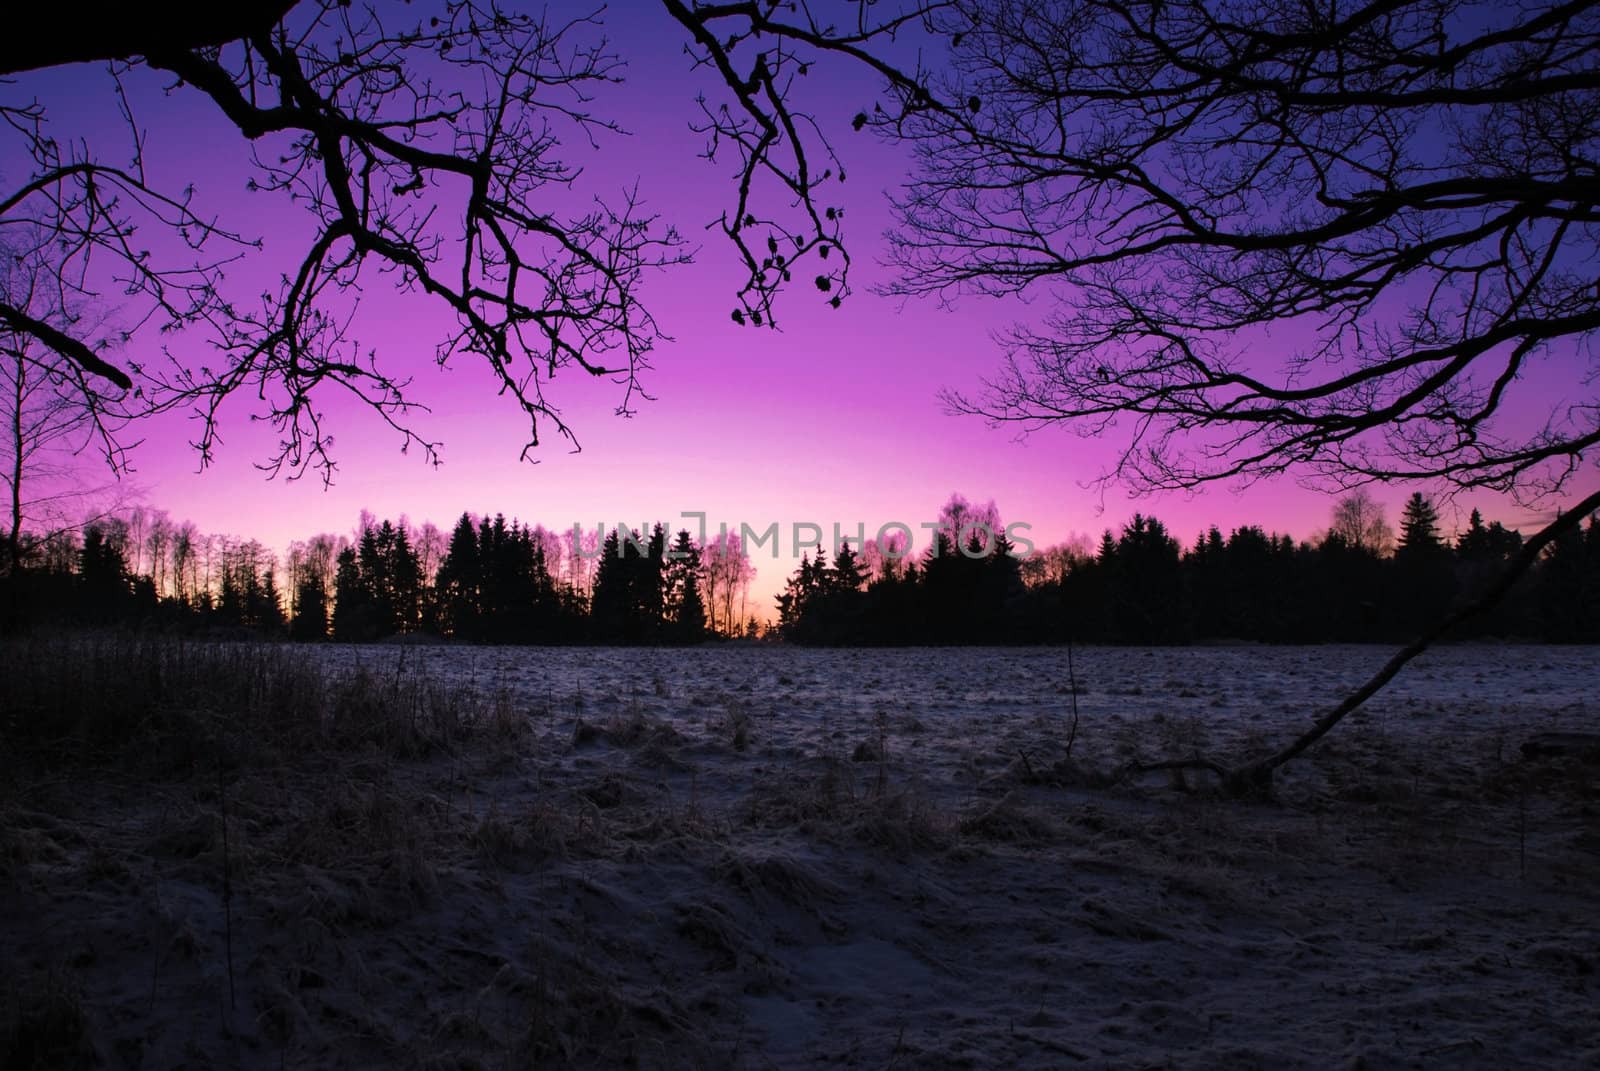 Sunrise in winter by drakodav